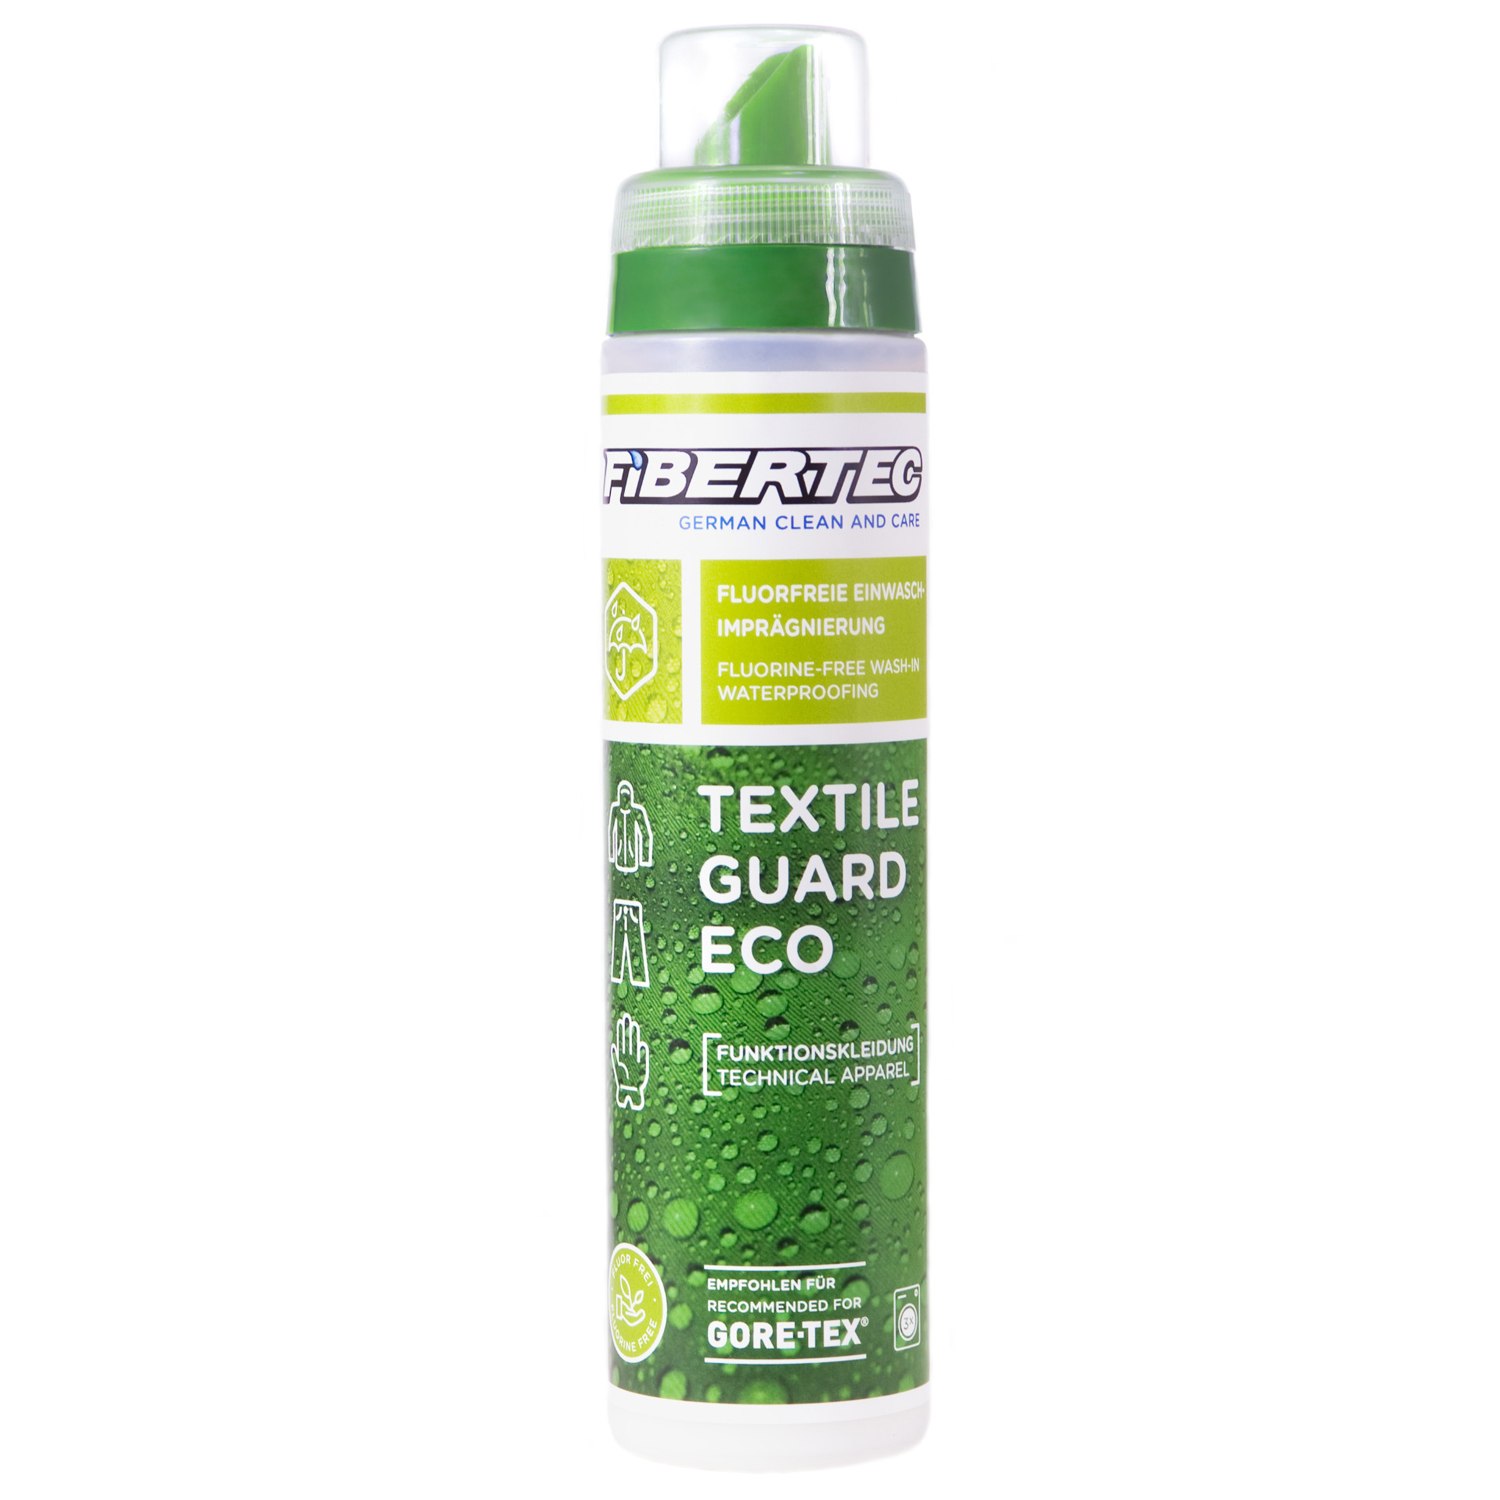 Produktbild von Fibertec Textile Guard Eco Wash-In Spezialimprägnierung 250 ml